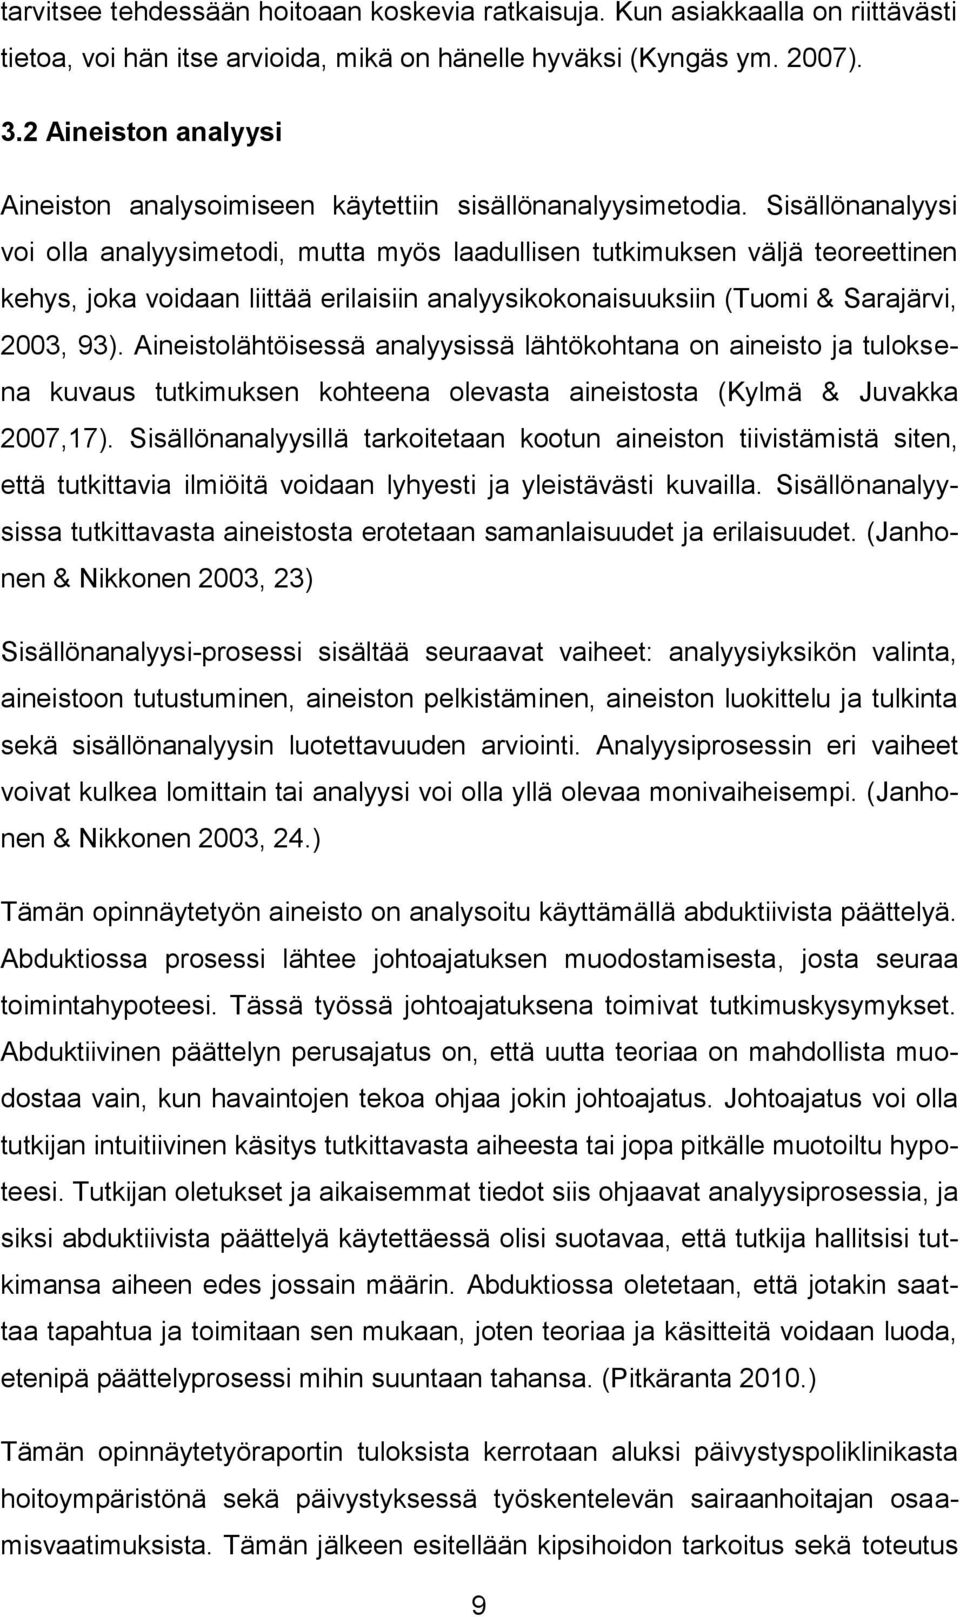 Sisällönanalyysi voi olla analyysimetodi, mutta myös laadullisen tutkimuksen väljä teoreettinen kehys, joka voidaan liittää erilaisiin analyysikokonaisuuksiin (Tuomi & Sarajärvi, 2003, 93).